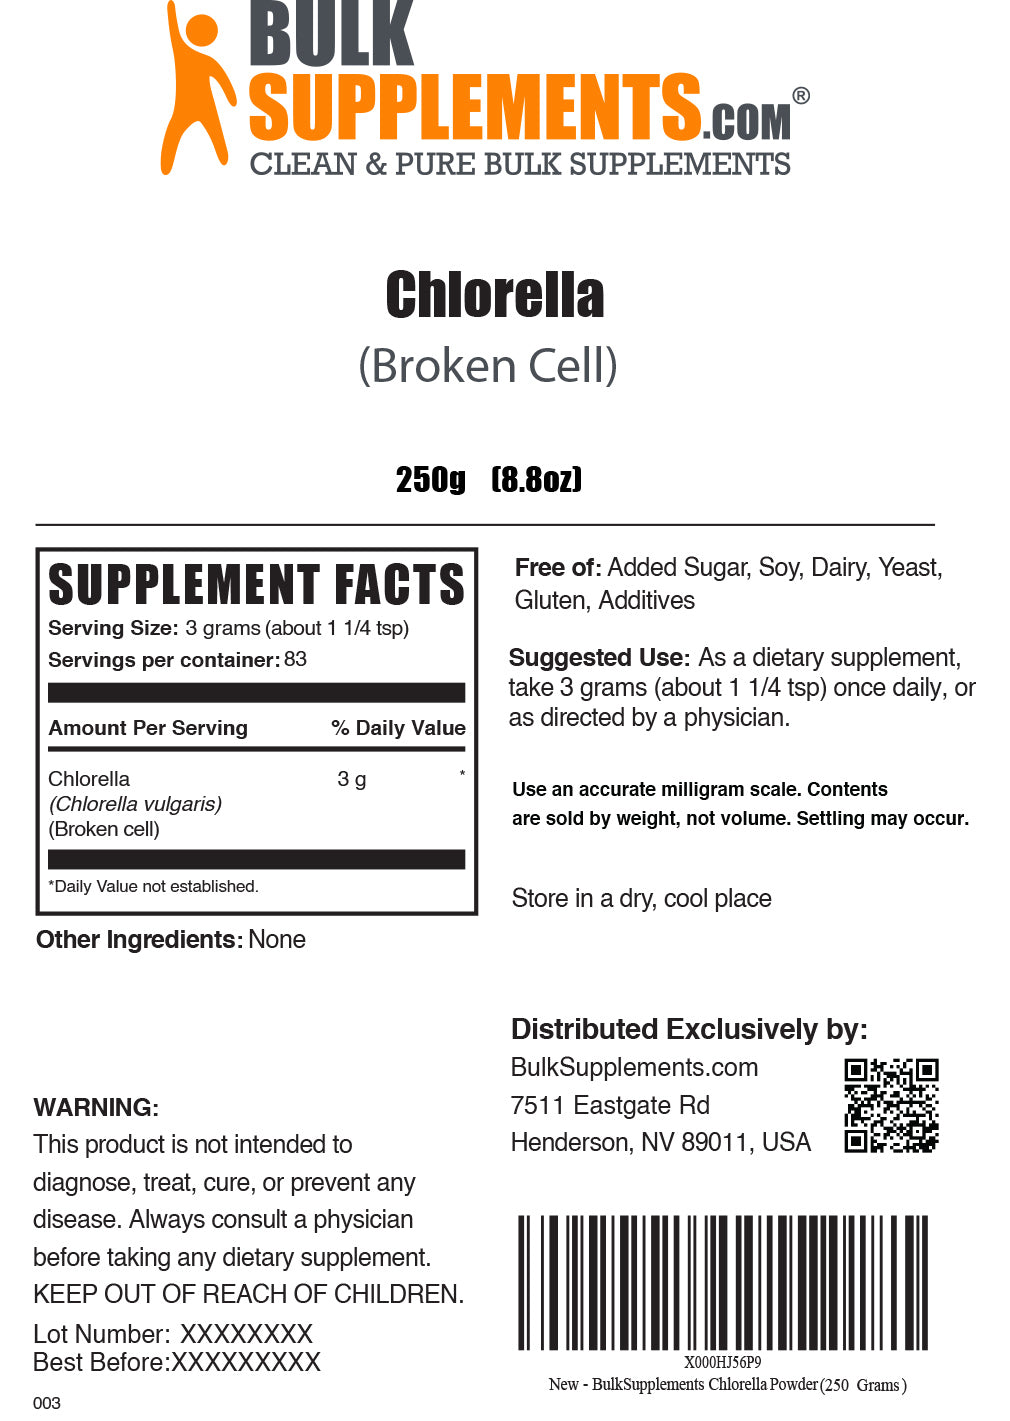 250g of chlorella powder